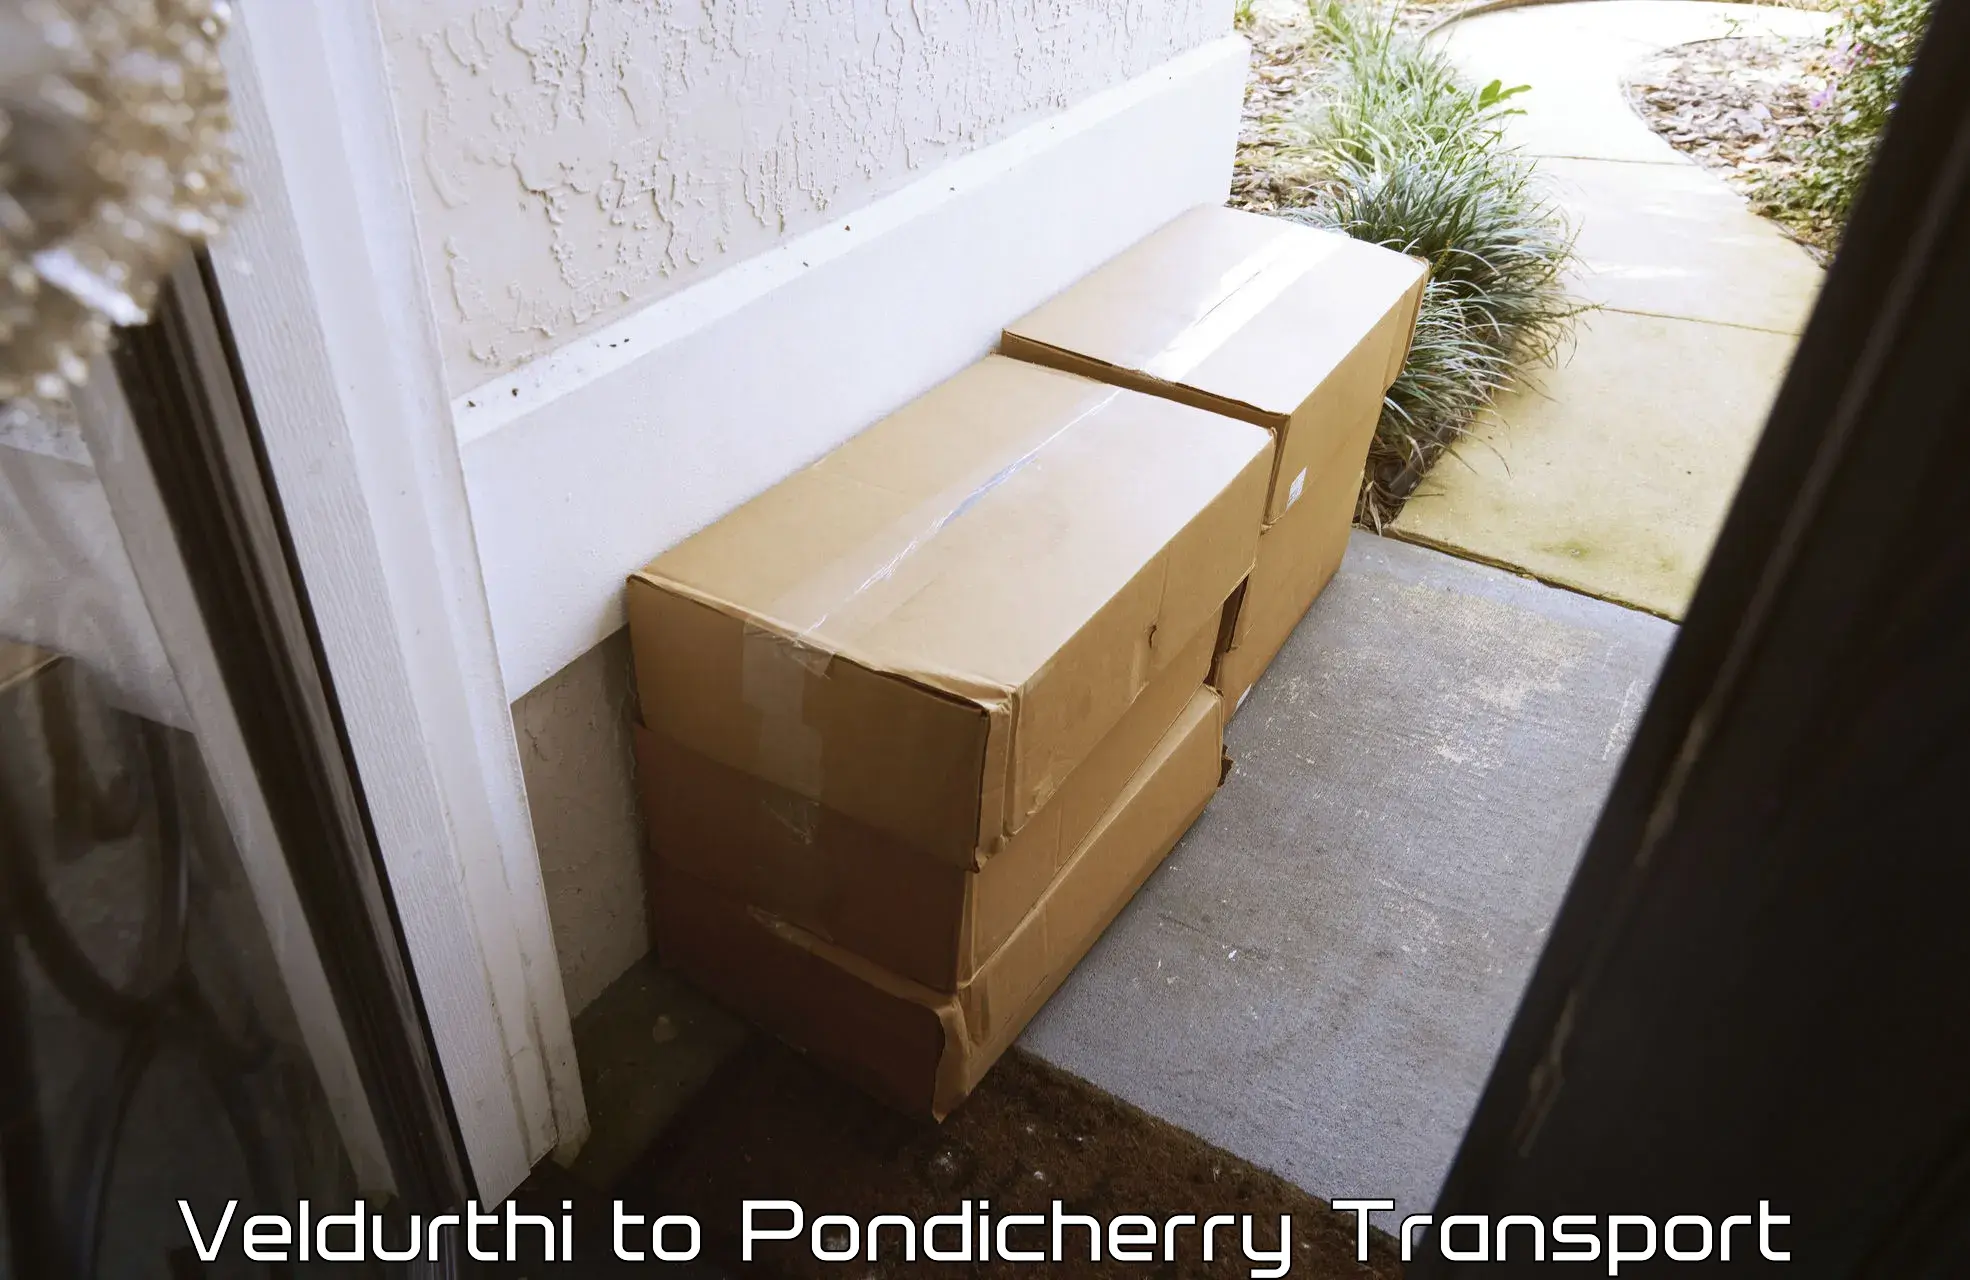 Online transport booking Veldurthi to Pondicherry